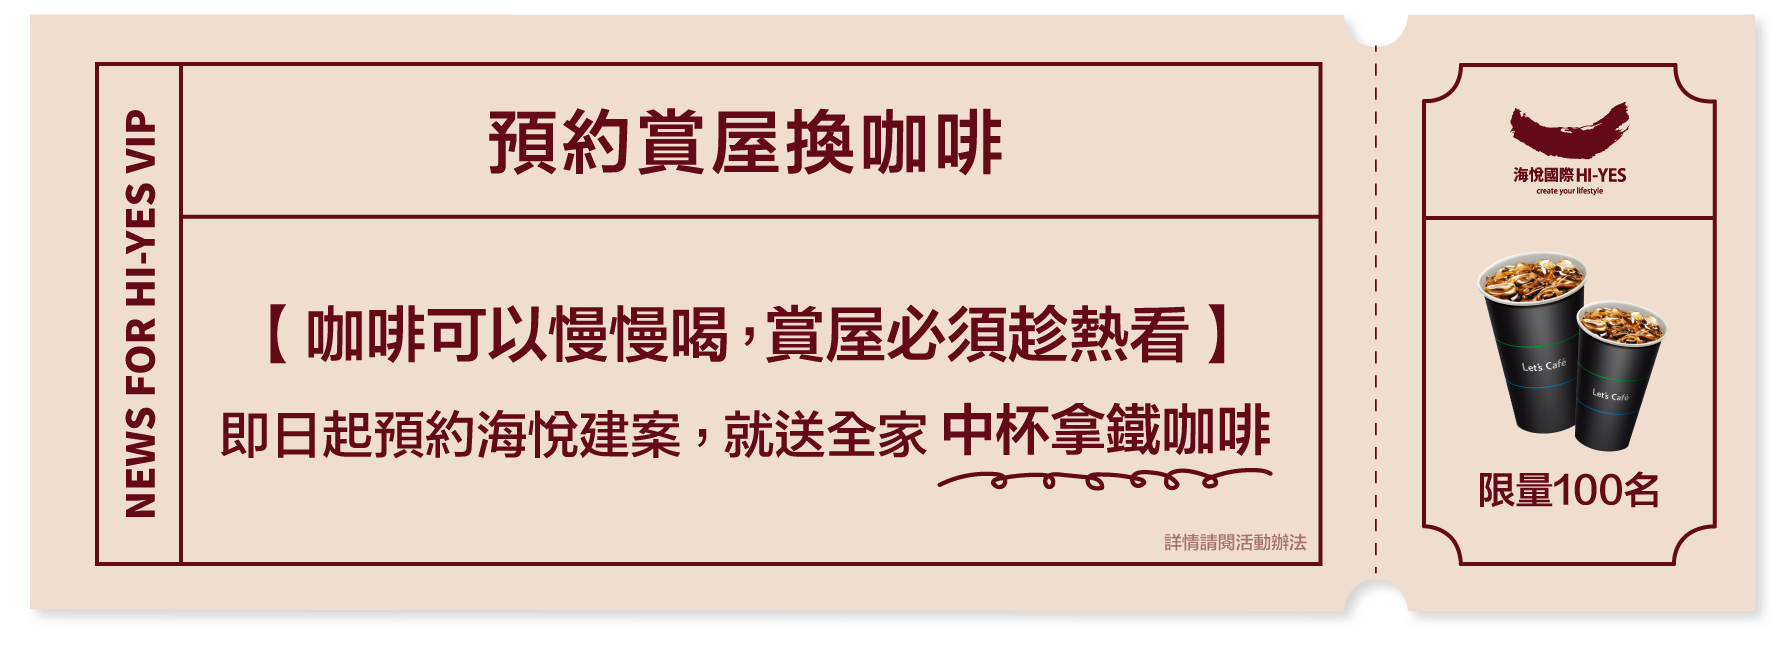 海悅國際指定網站線上預約送拿鐵